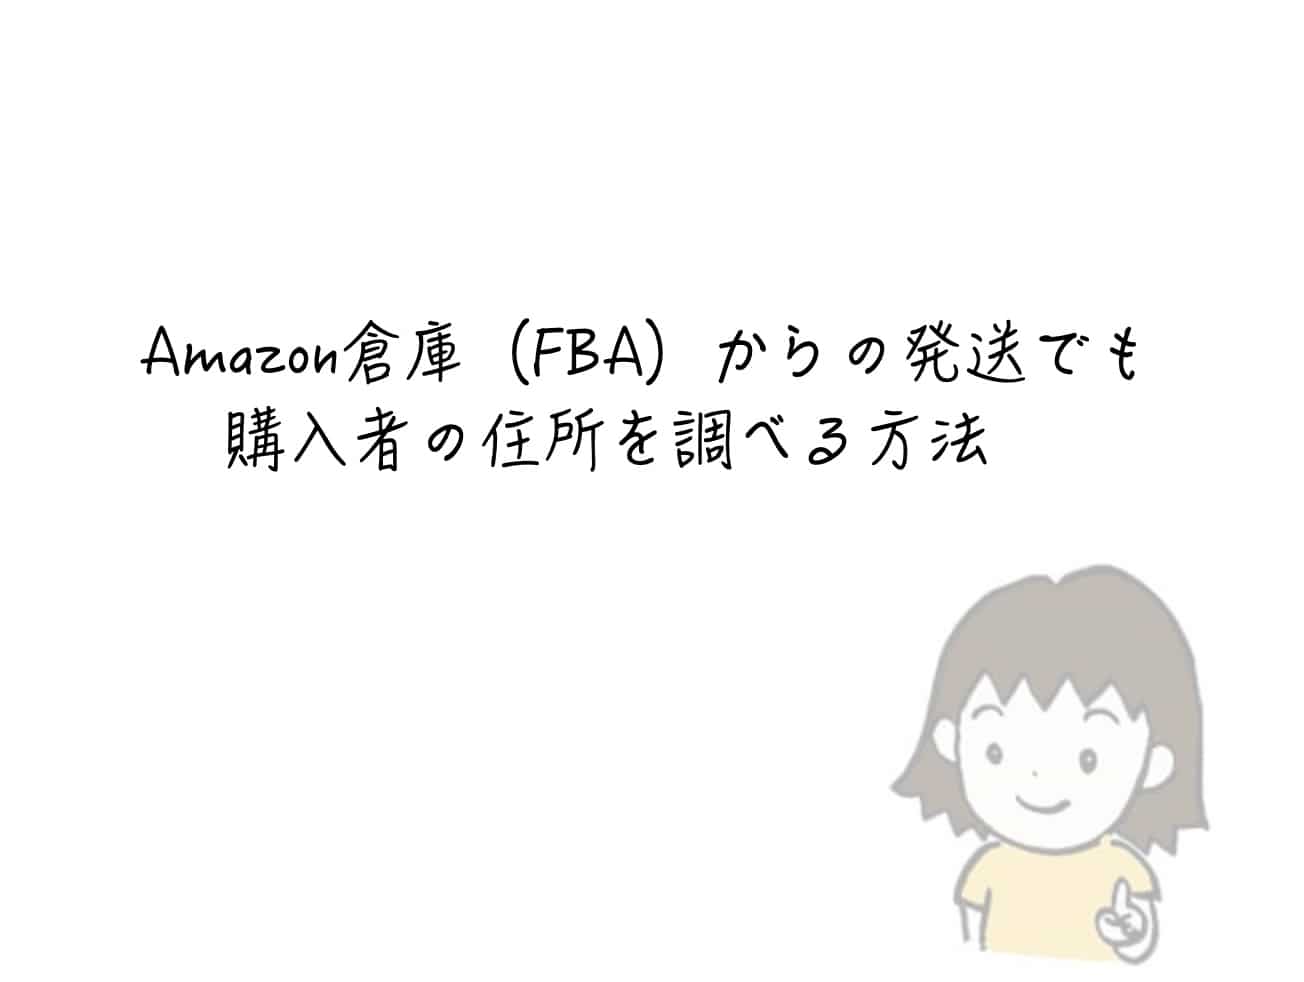 Amazon倉庫（FBA）からの発送でも購入者の住所を調べる方法